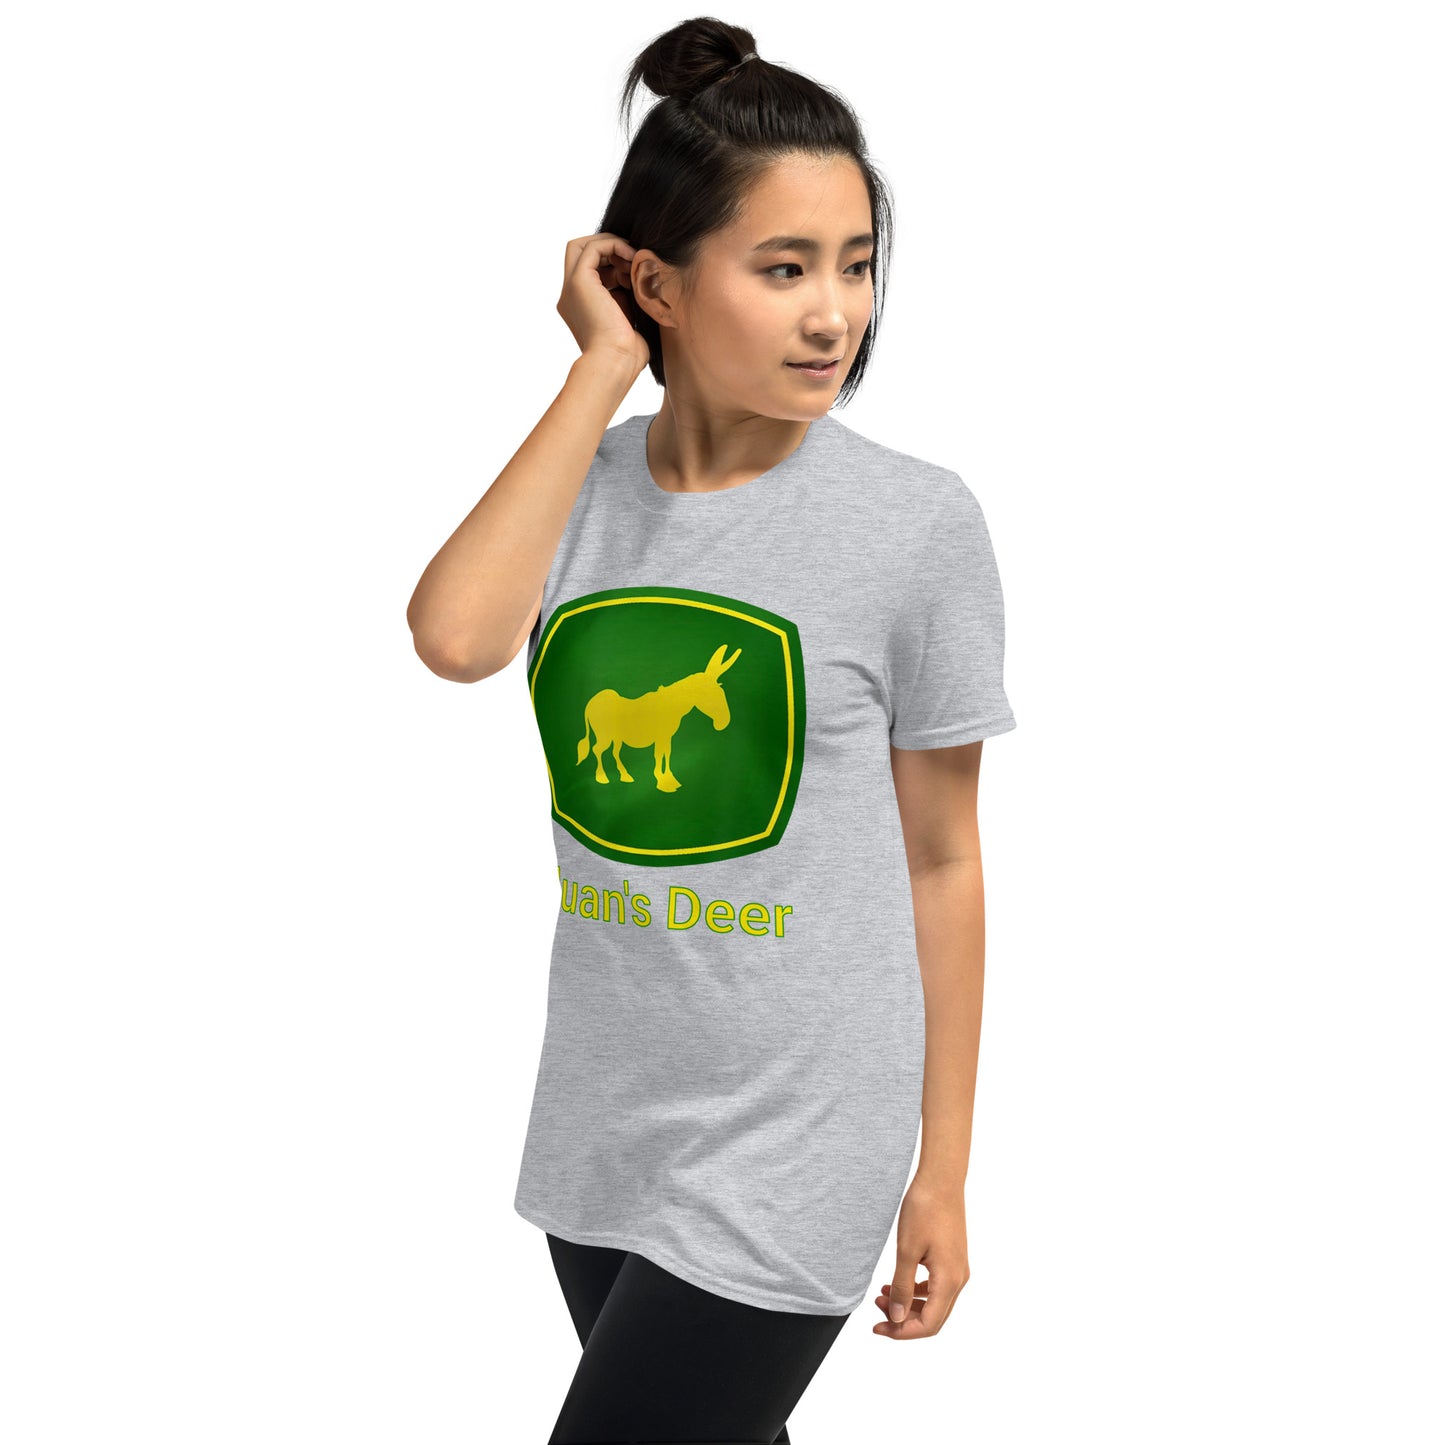 Juan's Deer Short-Sleeve Unisex T-Shirt